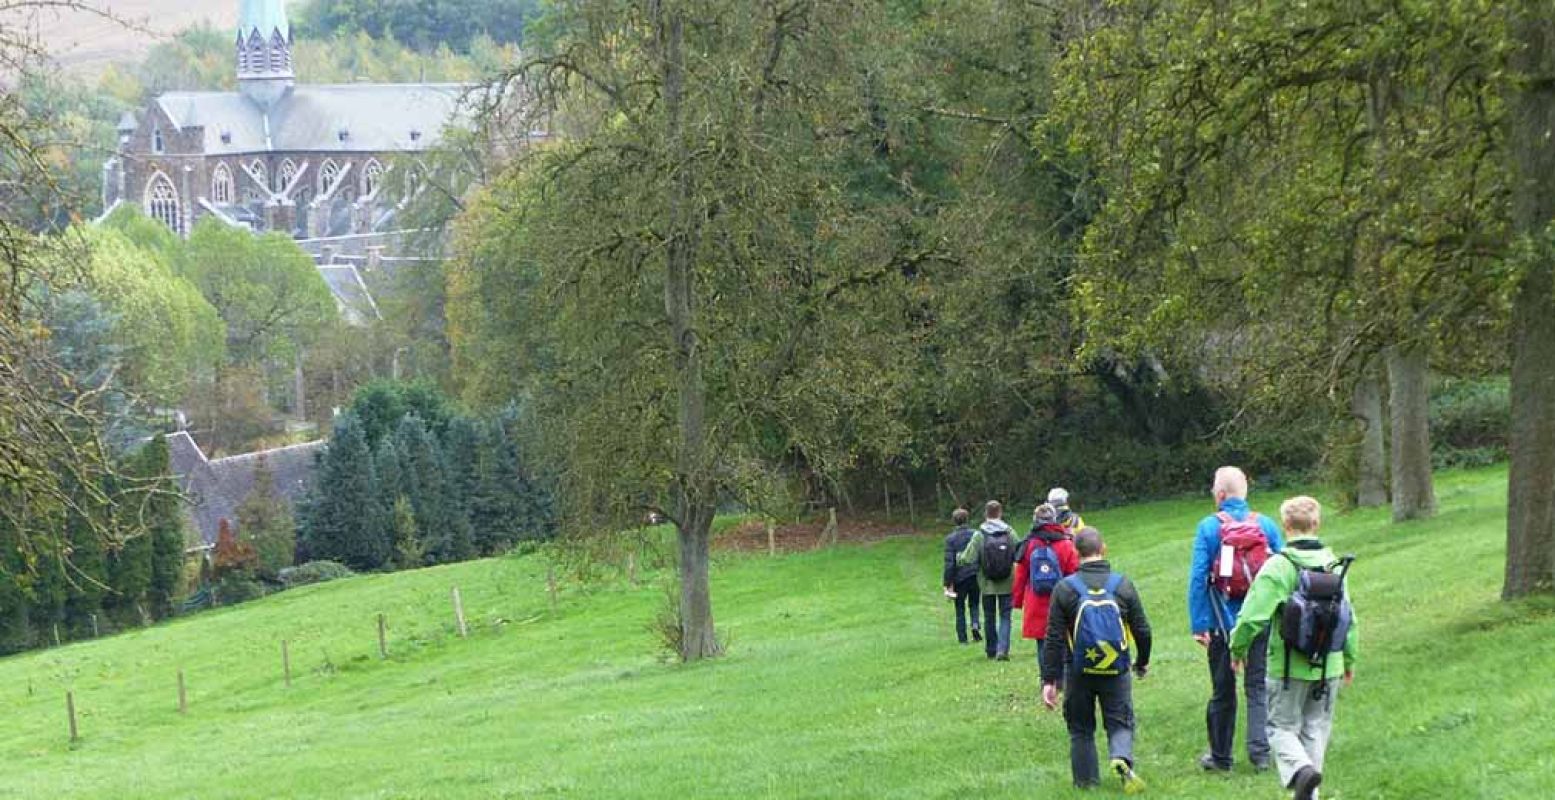 Wandelaars naderen abdij van Val-Dieu tijdens 'een wandeling rondom Zuid-Limburg'. Foto: Wandelroute van het Jaar 2018.